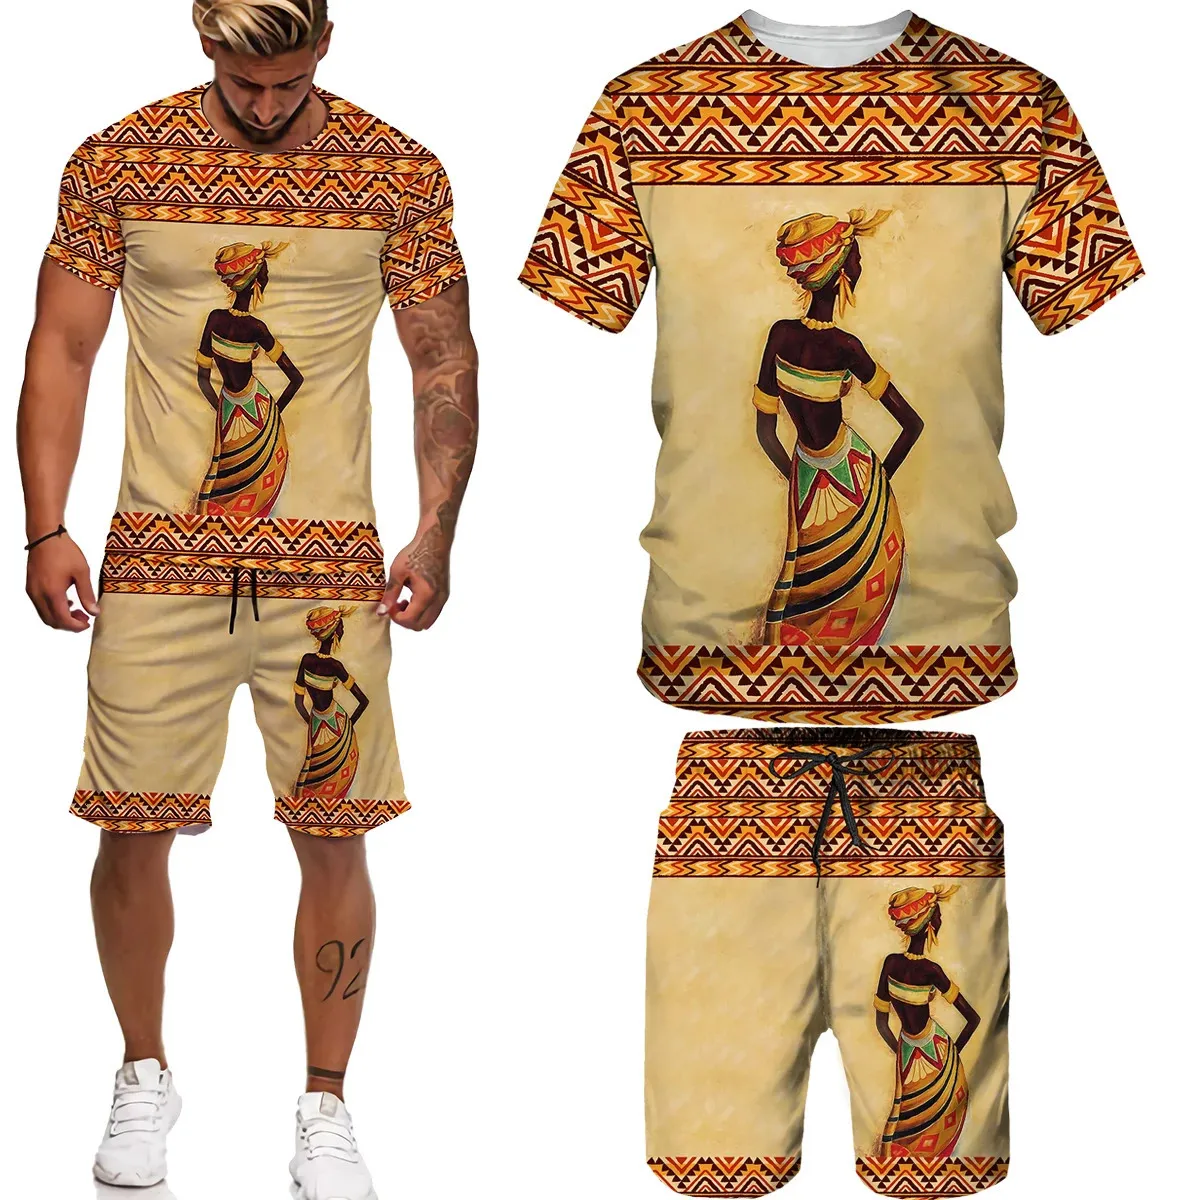 Man sommar kortärmad afrika tryck teesshortssuits folkCustom t shirt shorts träning set afrikanska kläder för män 002 240228